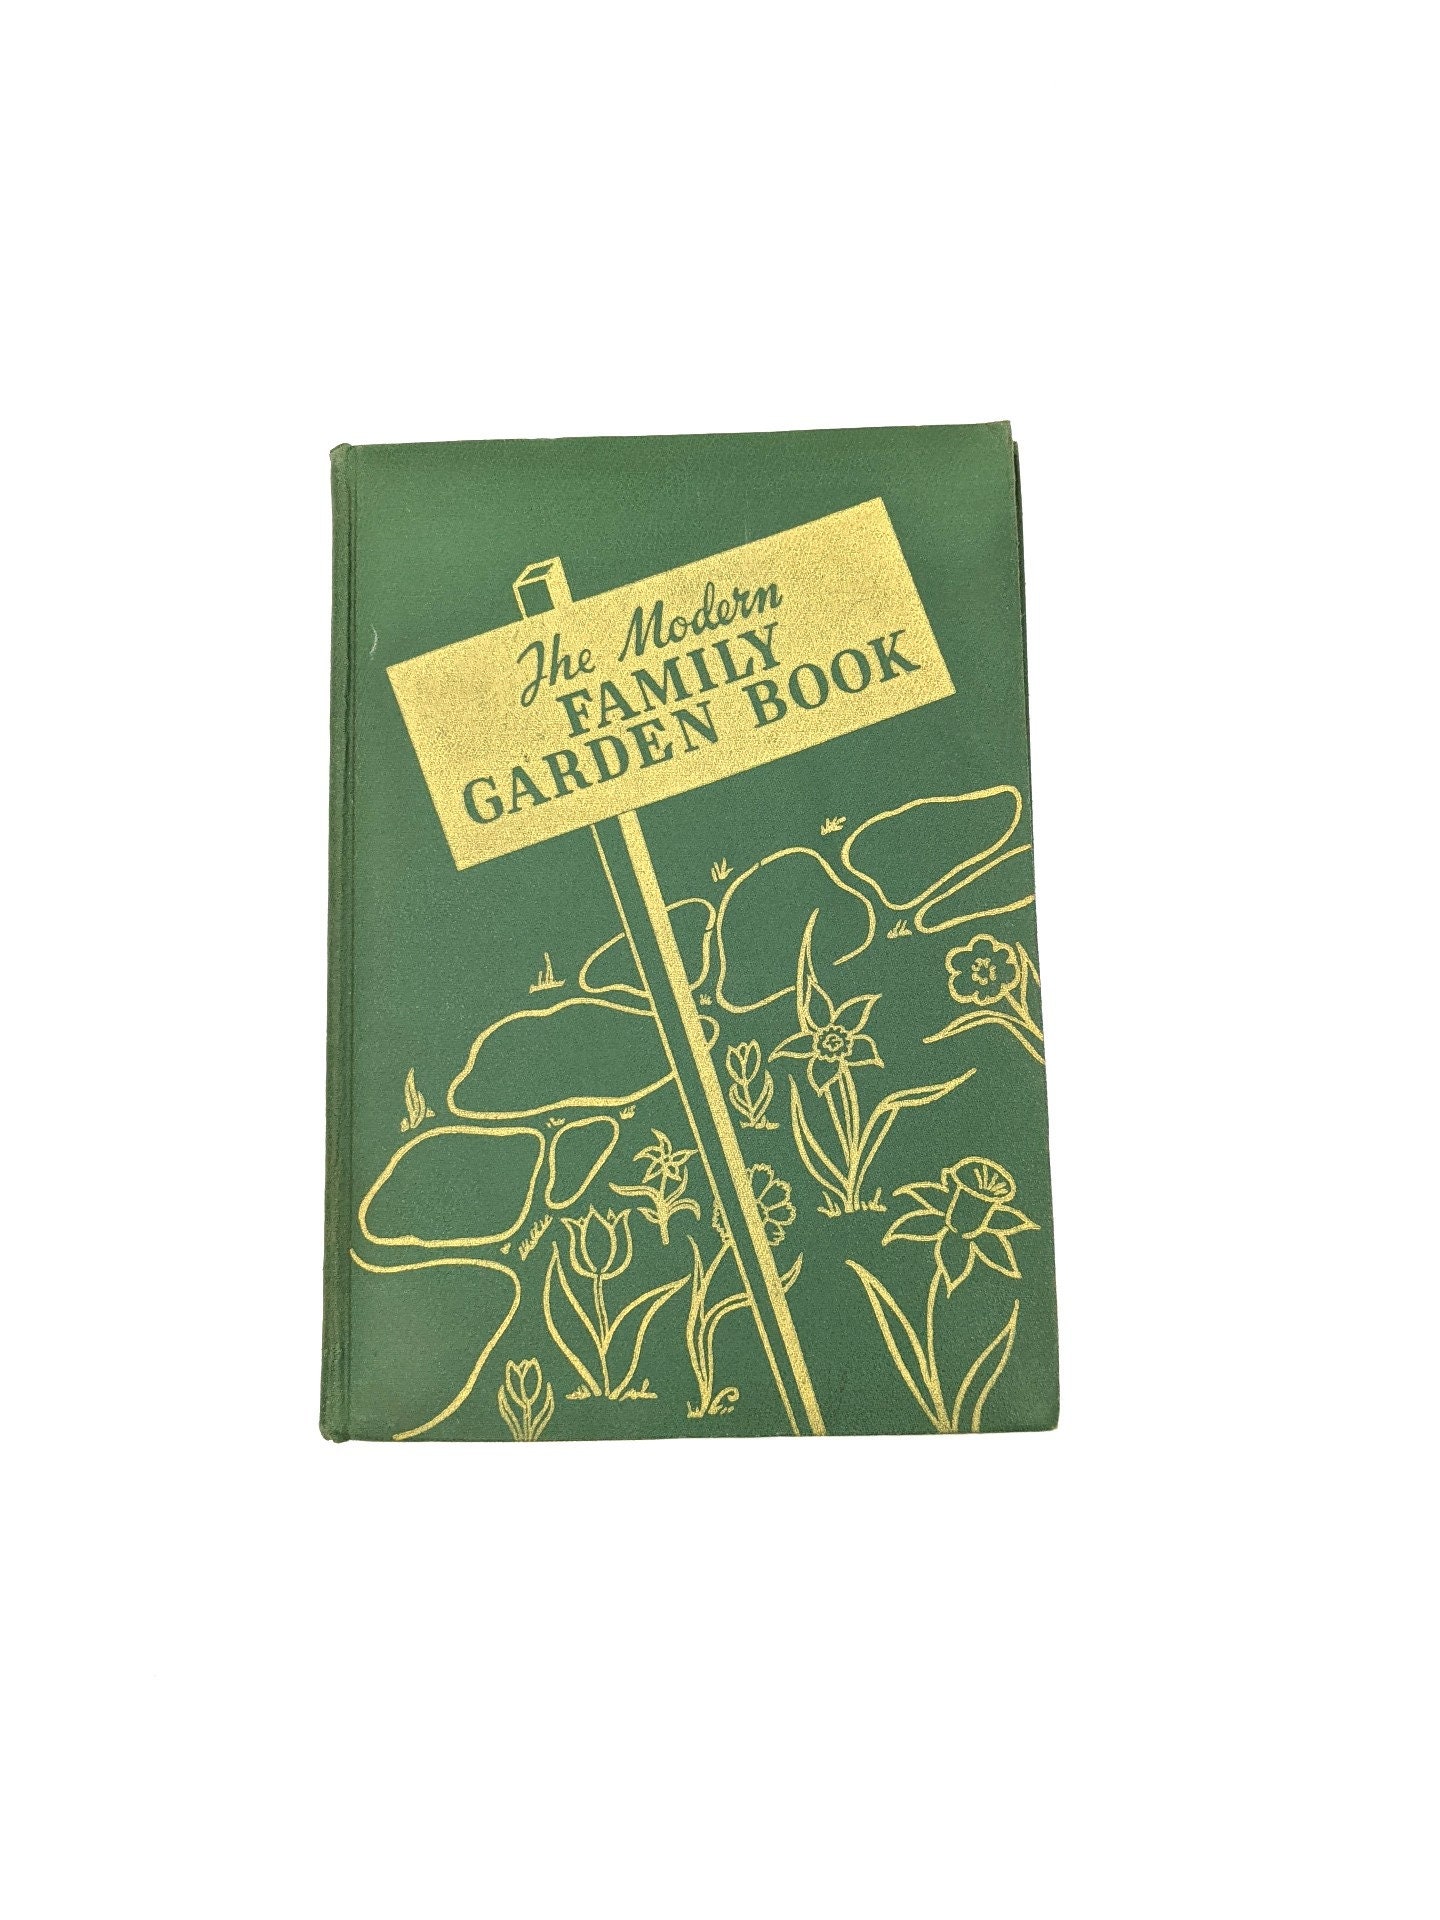 The Modern Family Garden Book by Roy E Biles 1940s Gardening